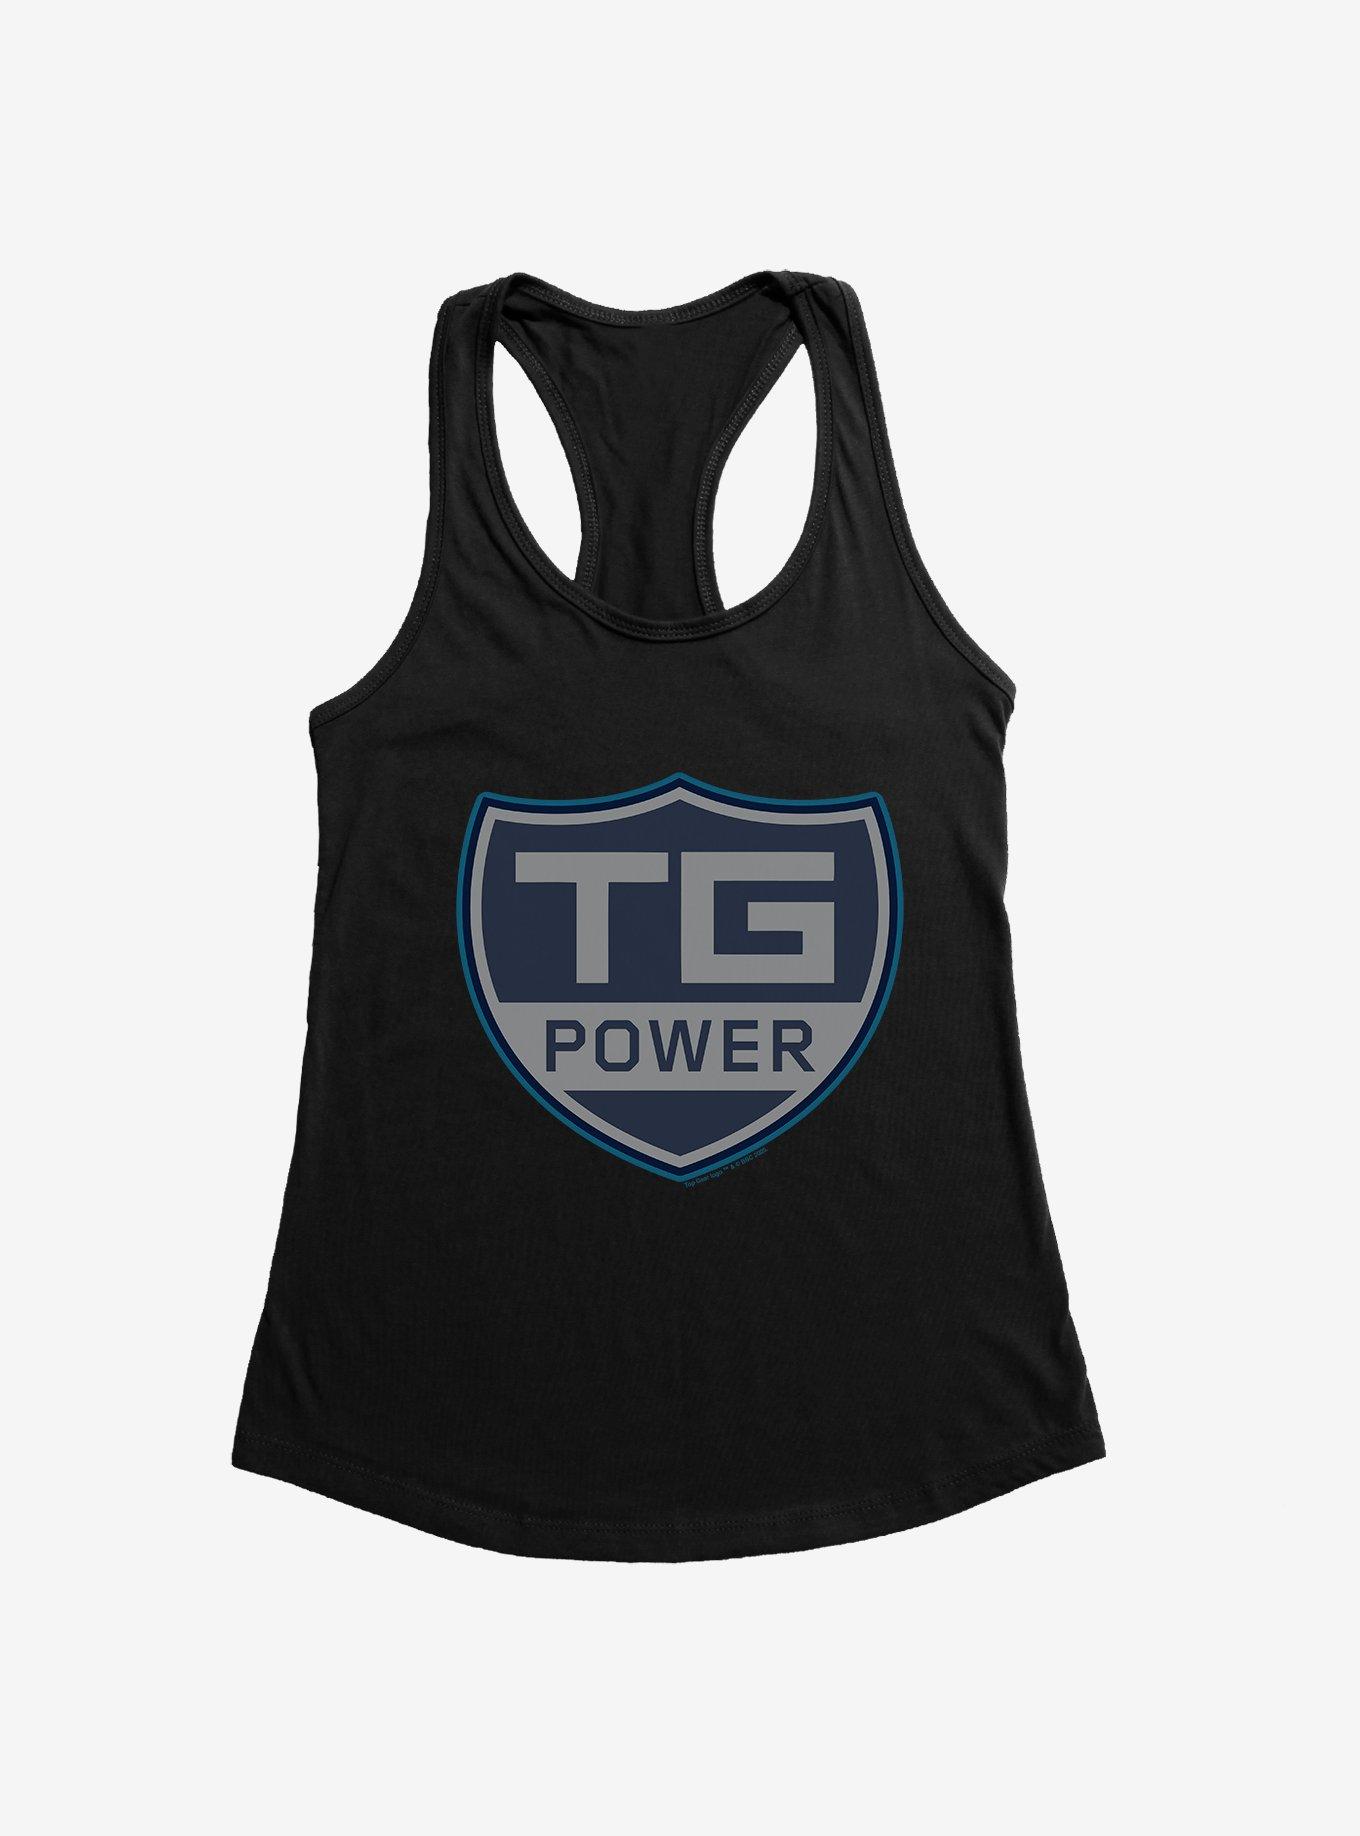 Top Gear TG Power Girls Tank